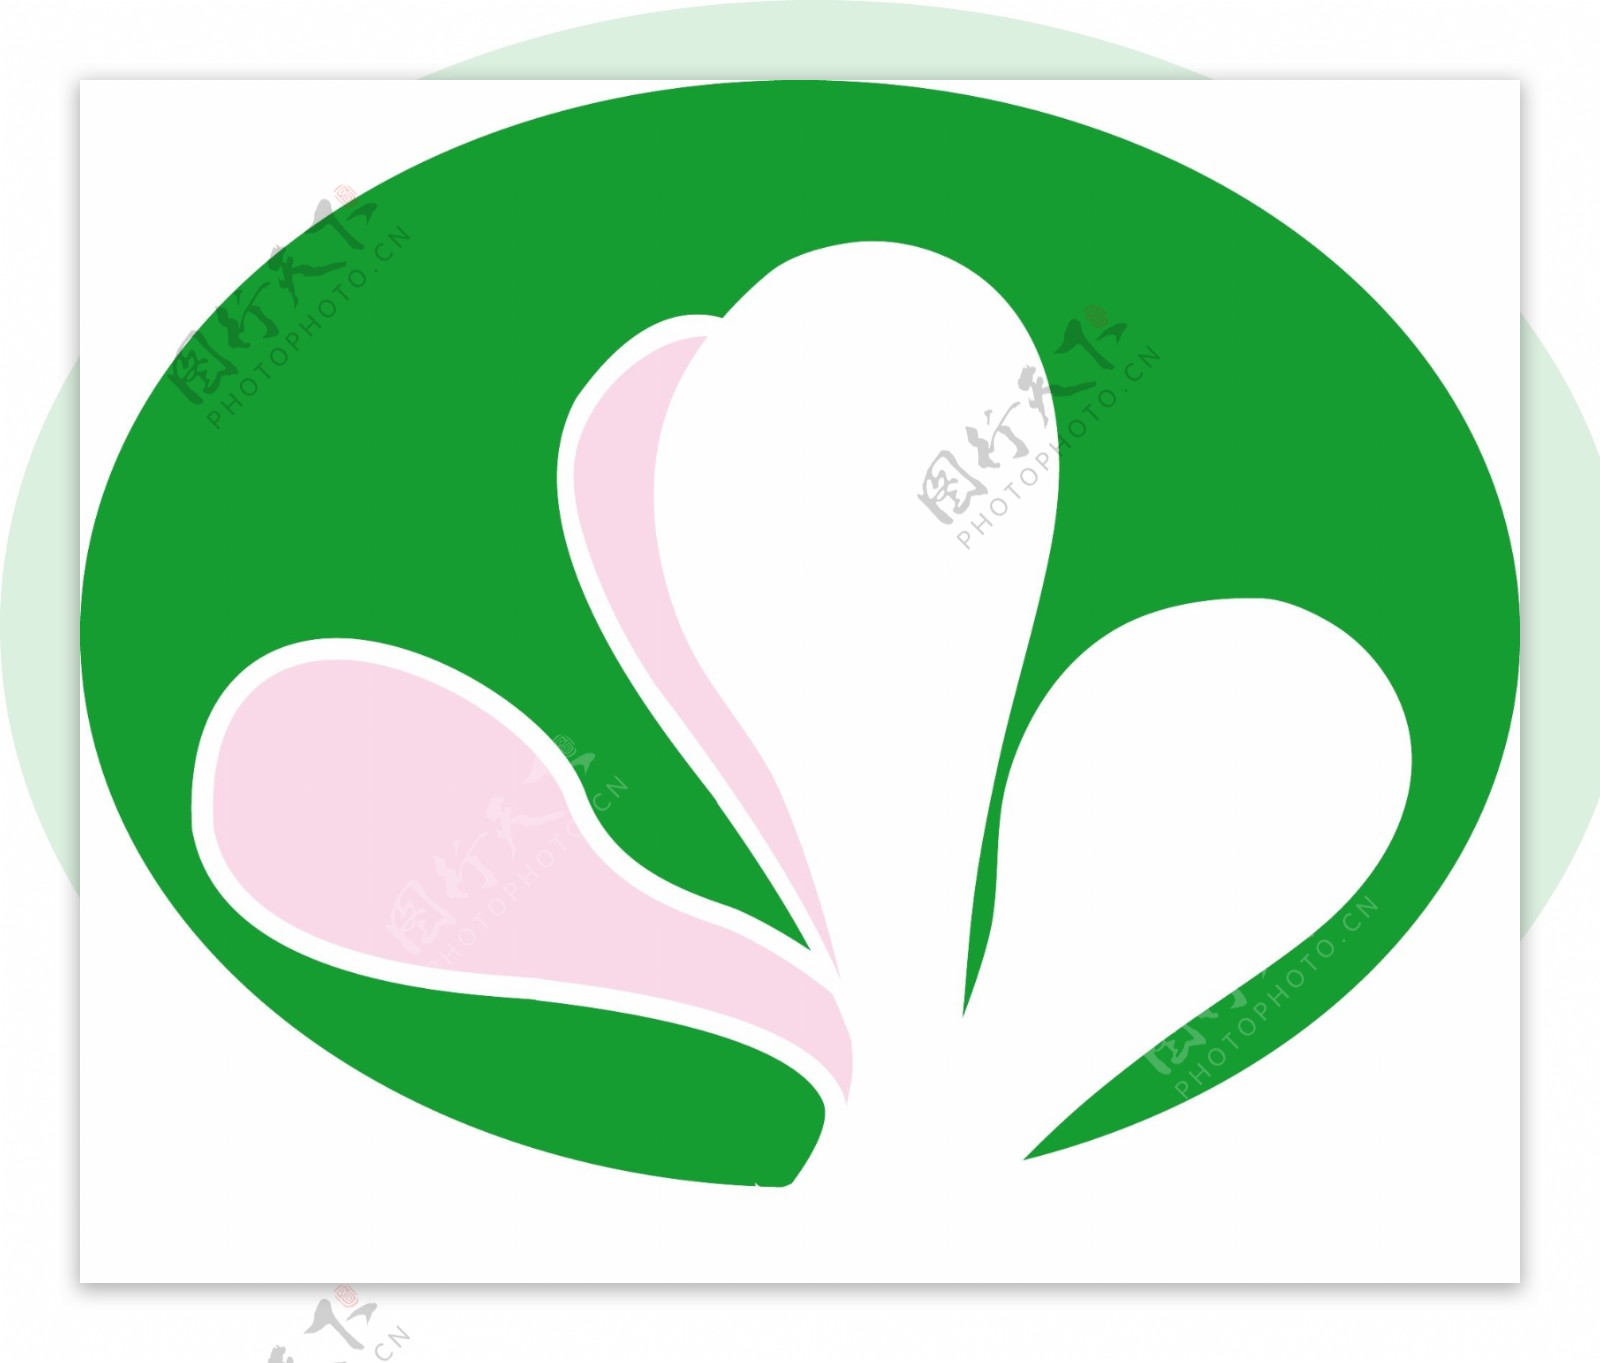 玉兰花logo图片